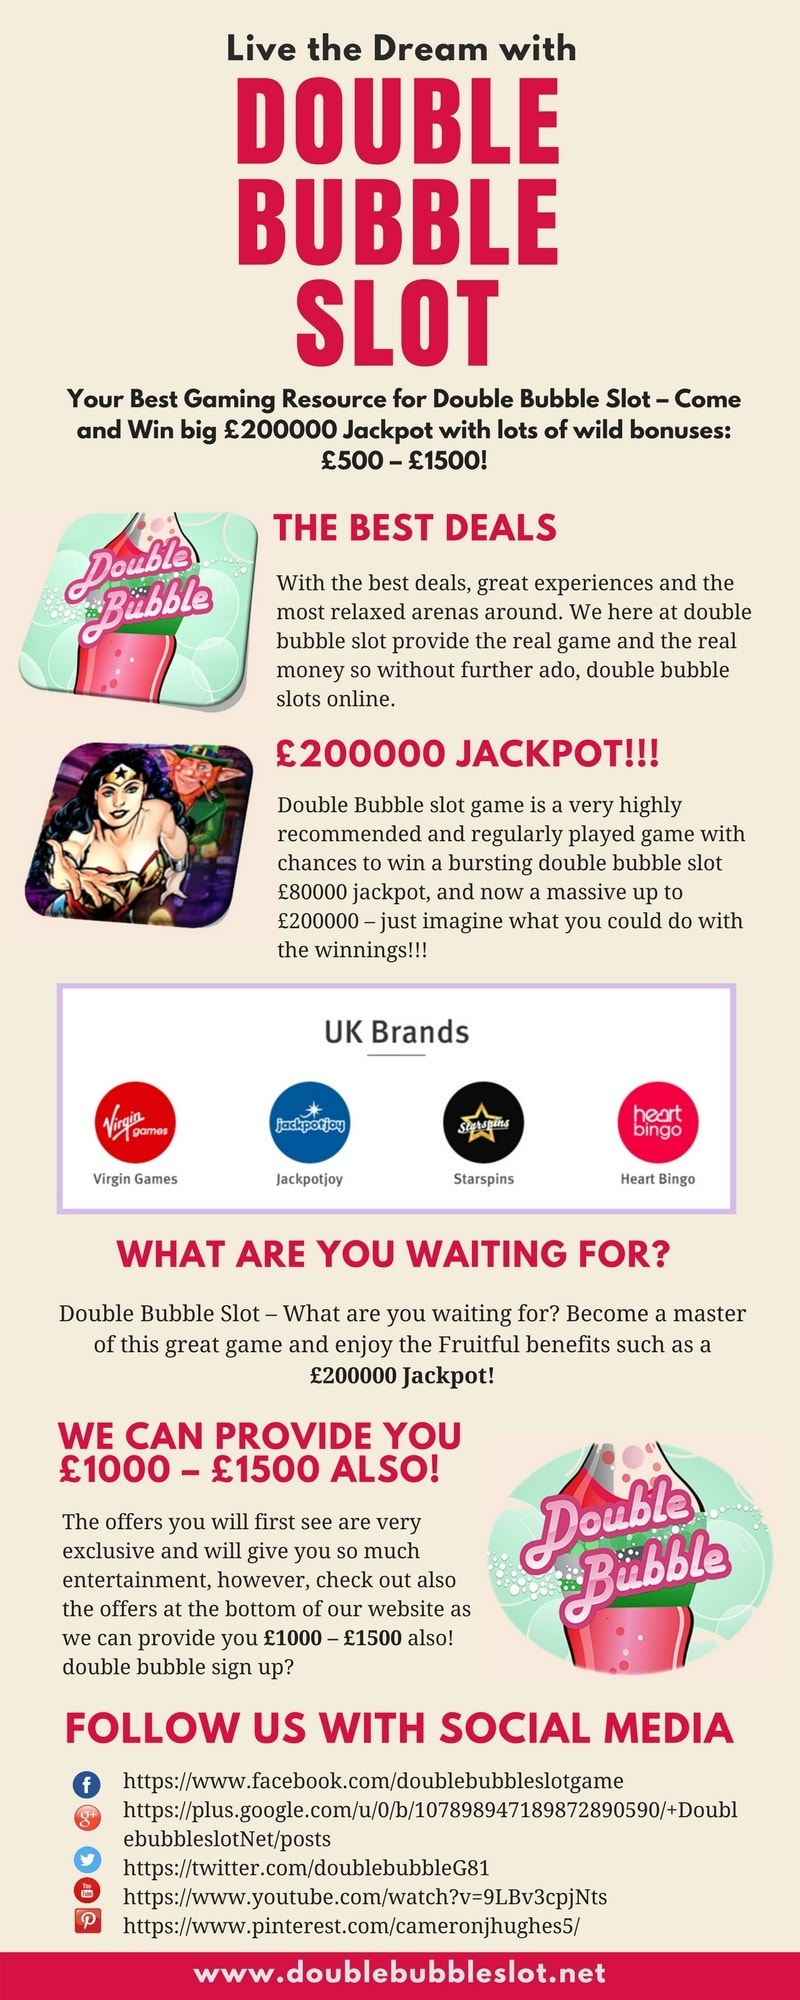 Play & Win Double Bubble Slots Online in UK